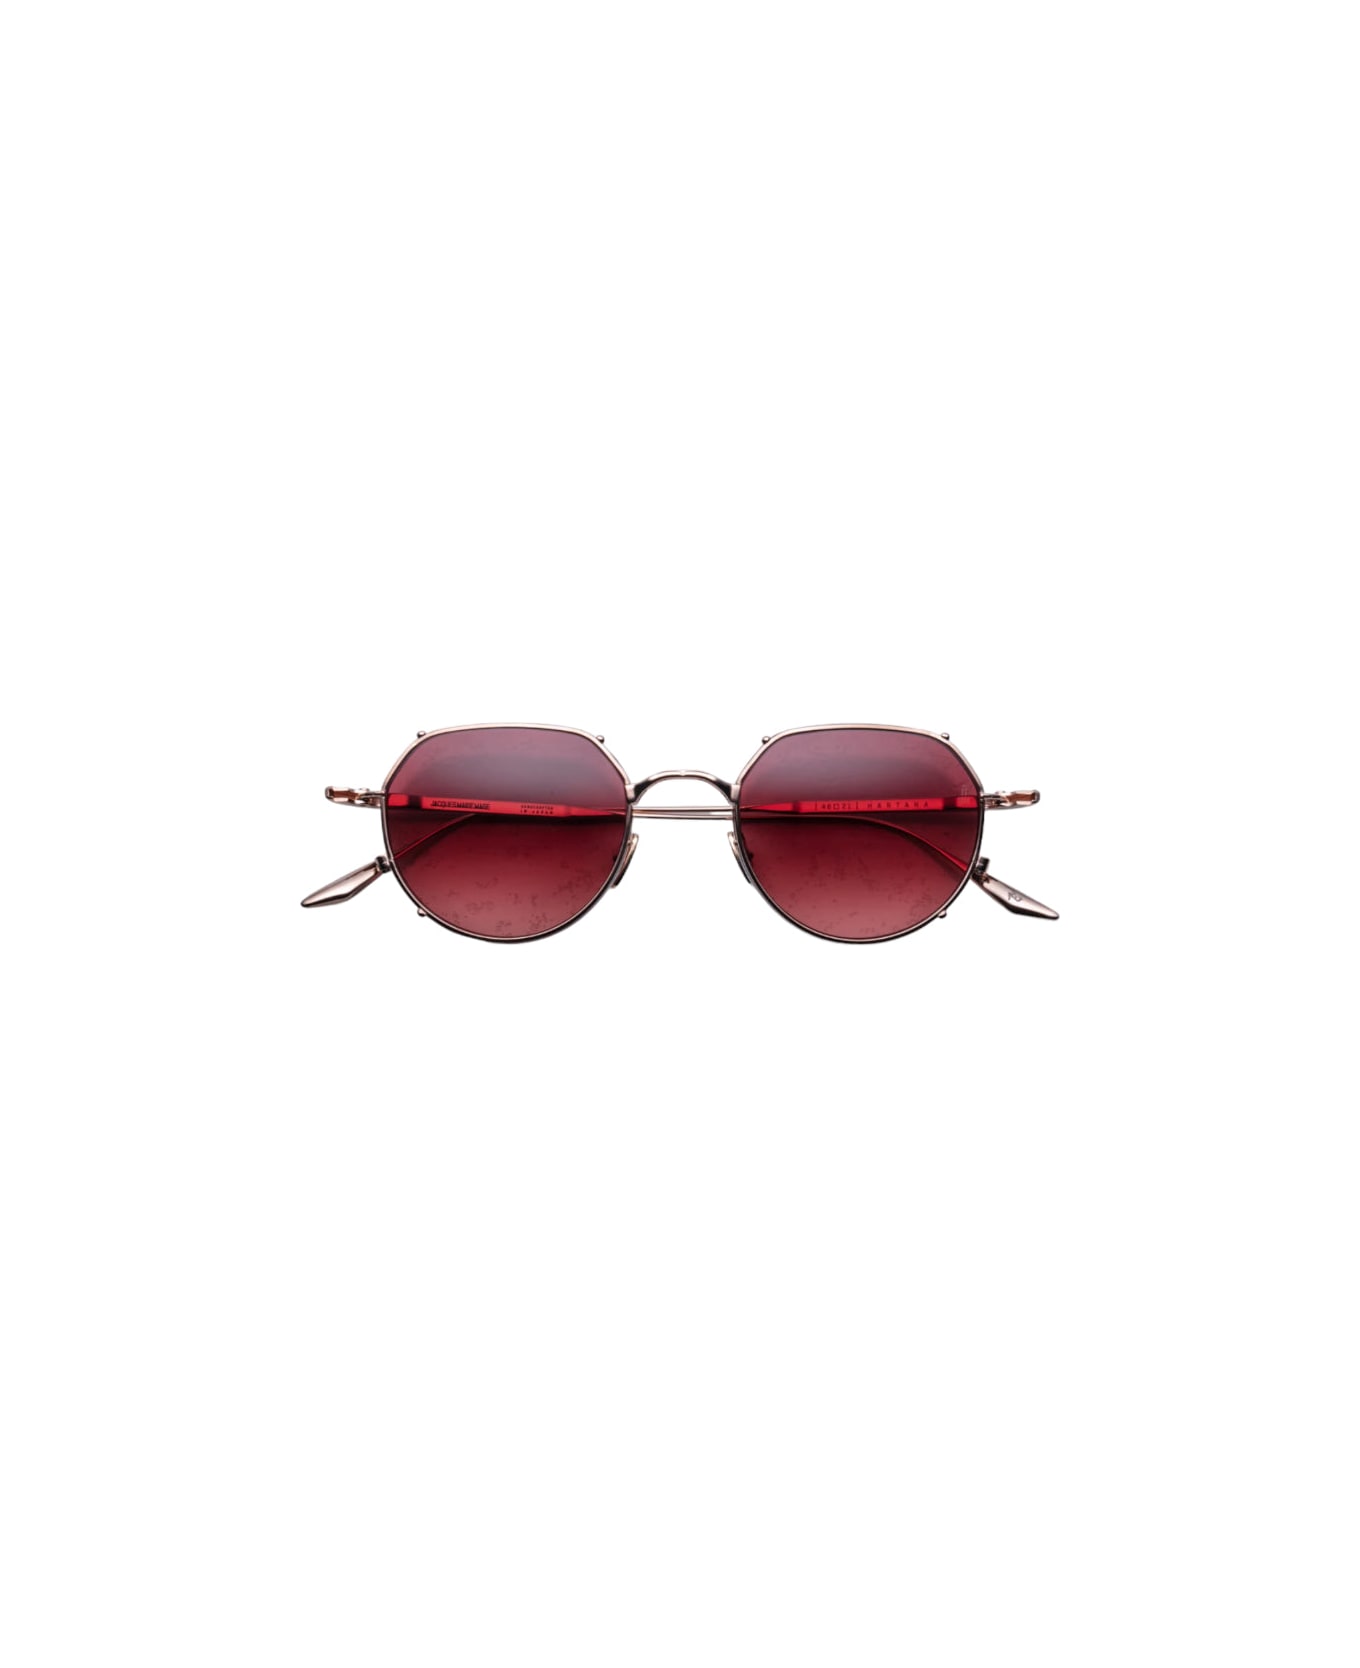 Givenchy Eyewear square-frame tortoiseshell-effect sunglasses BIG Hartana - Rose Gold Sunglasses